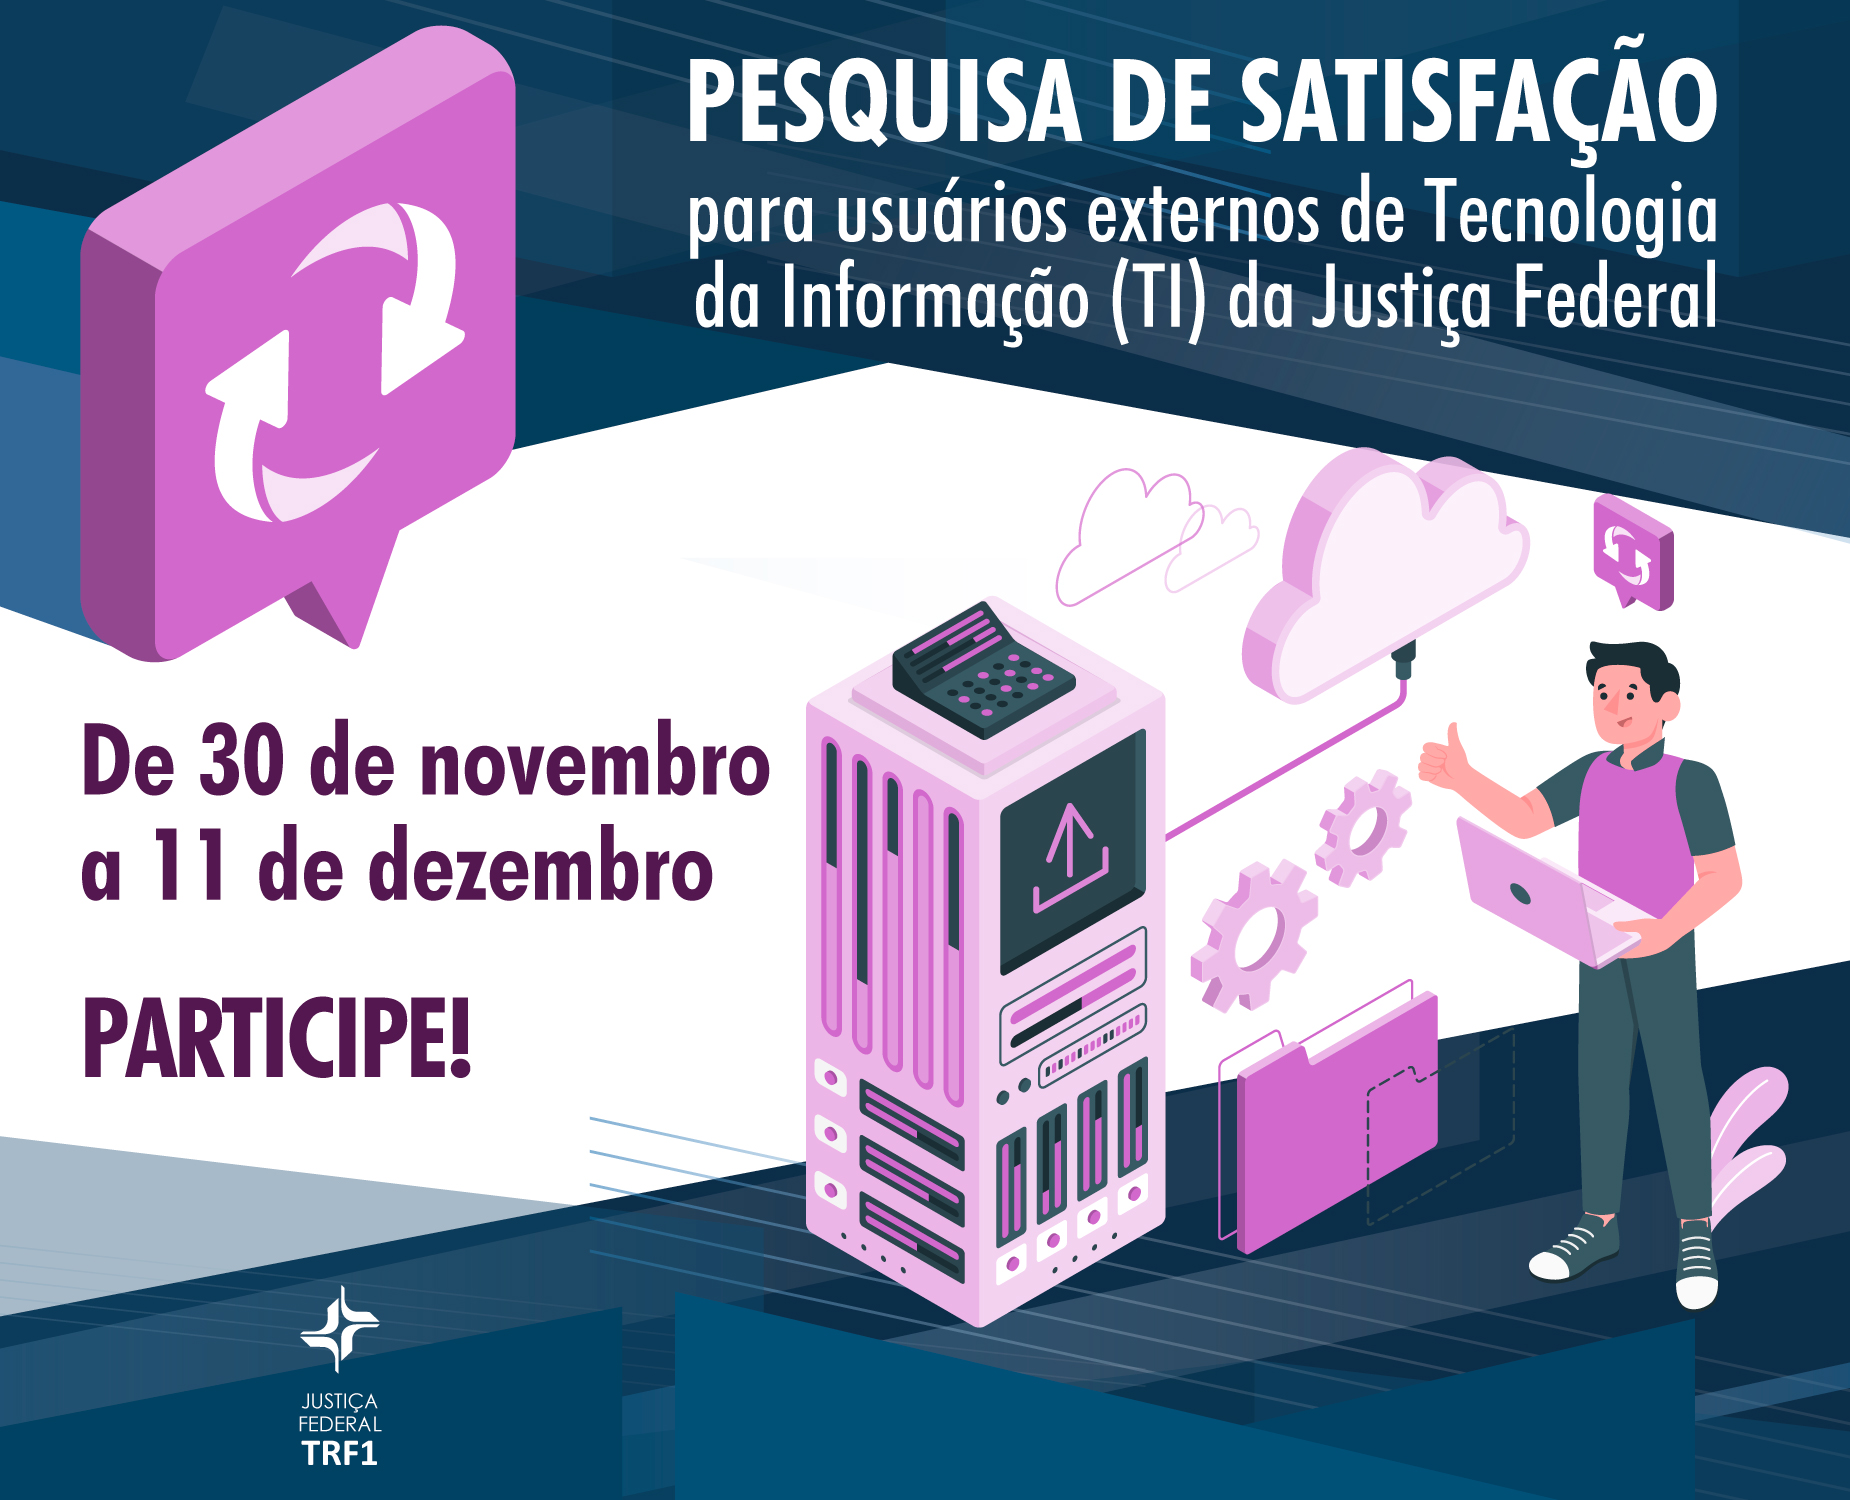 INSTITUCIONAL: CJF realiza pesquisa de satisfação para usuários externos da Justiça Federal